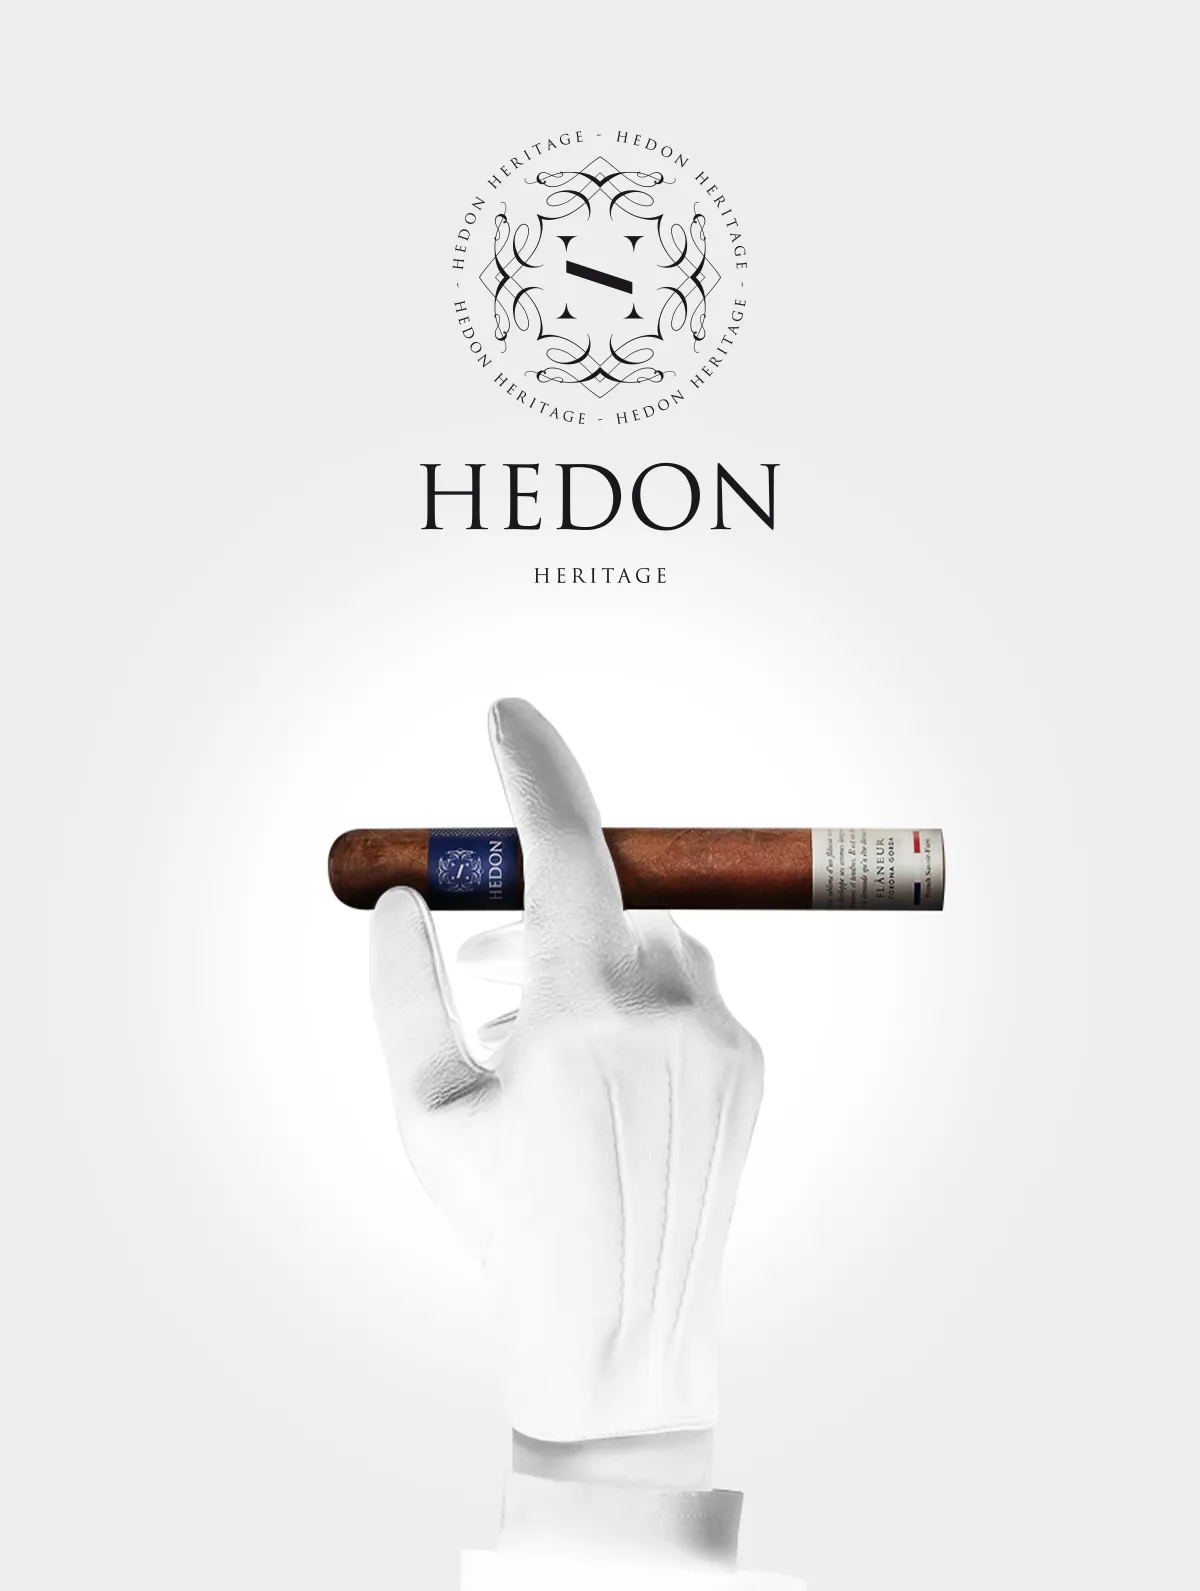 HEDON 雪茄 - 为这个唯一的法国雪茄品牌设计一个史诗般的形象。 - By HDG